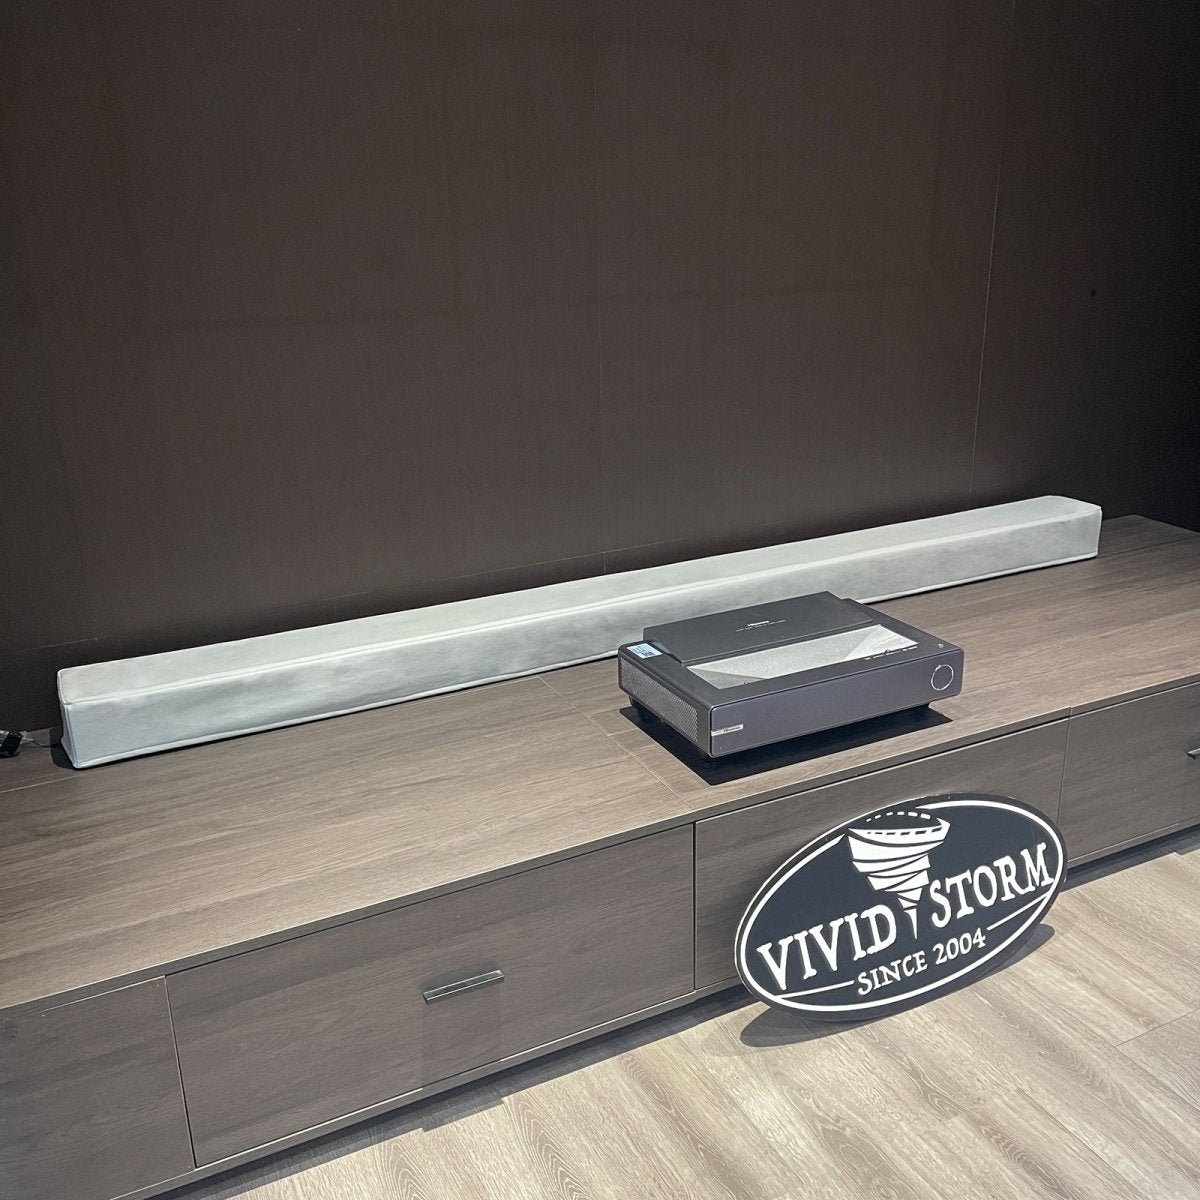 VIVIDSTORM Motorized Projector Screen Waterproof Dust Cover - VIVIDSTORM